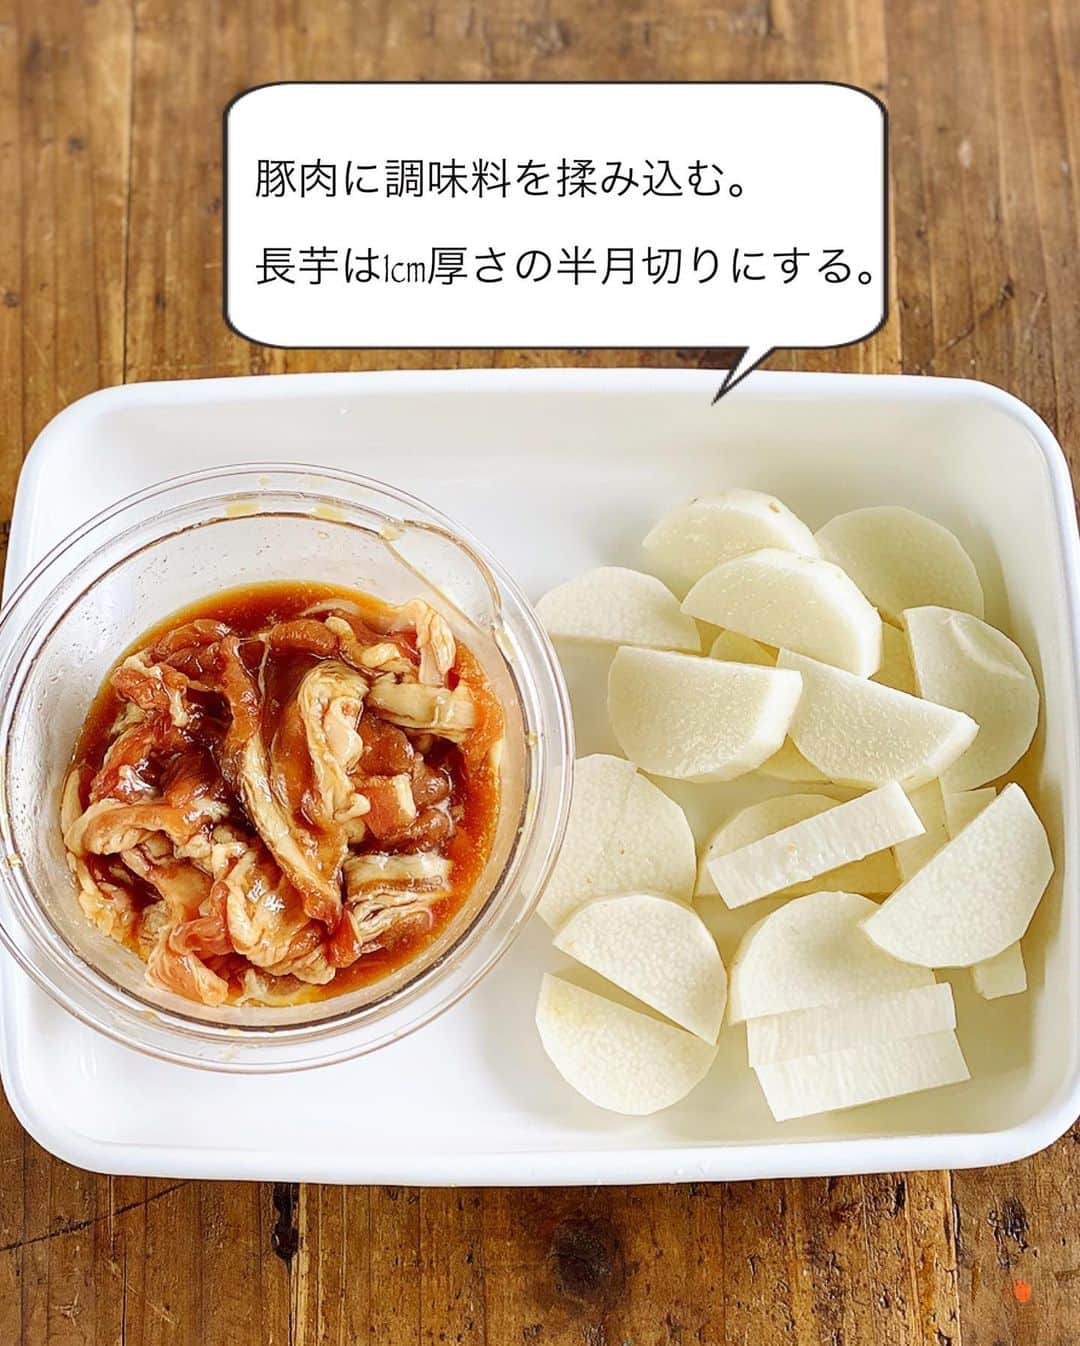 Mizuki【料理ブロガー・簡単レシピ】さんのインスタグラム写真 - (Mizuki【料理ブロガー・簡単レシピ】Instagram)「・﻿ 【レシピ】ーーーーーーーーーーーーーーーー﻿ ♡レンジde6分！豚肉と長芋のうまだれ蒸し♡﻿ ーーーーーーーーーーーーーーーーーーーーー﻿ ﻿ ﻿ ﻿ おはようございます(*^^*)﻿ ﻿ 今日はまたまたレンチンおかず☆﻿ ［豚肉と長芋のうまだれ蒸し］を﻿ ご紹介させていただきます♩﻿ コクのある甘辛味で﻿ がっつりごはんがすすみますよ〜♡﻿ (しかもノンオイル♩)﻿ ﻿ 作り方は超簡単(*´艸`)﻿ ぜ〜んぶ入れてレンチンするだけ！﻿ 加熱時間たった6分で﻿ 豚肉はジューシーに﻿ 長芋は食感よく仕上がります♡﻿ ﻿ あっという間にできるので﻿ よかったらお試し下さいね(*^^*)﻿ ﻿ ﻿ ﻿ ーーーーーーーーーーーーーーーーーーーー﻿ 【2人分】﻿ 豚バラ薄切り肉...150g﻿ 長芋...200g﻿ ●酒・みりん...各大1﻿ ●醤油・砂糖・オイスターソース...各小2﻿ ●片栗粉...小1﻿ 粗挽き黒こしょう・ねぎ...各適量﻿ ﻿ 1.豚肉は4cm長さに切って●を揉み込む。長芋は1cm厚さの半月切りにする。﻿ 2.耐熱皿に豚肉半量→長芋→豚肉半量の順に重ねて入れる。ふんわりラップして600Wのレンジで6分加熱する。﻿ 3.よく混ぜて器に盛り、粗挽き黒こしょうとねぎをトッピングする。﻿ ーーーーーーーーーーーーーーーーーーーー﻿ ﻿ ﻿ ﻿ 《ポイント》﻿ ♦︎盛り付け用の器(耐熱で大きめのもの)で作ってもOK♩洗い物が減ります♩﻿ ﻿ ﻿ ﻿ ﻿ ﻿ ﻿ 🆕🆕🆕🆕🆕🆕🆕🆕🆕🆕﻿ 【🎥YouTube更新しました🎥】﻿ (＊ハイライトから飛べます♩)﻿ ↓﻿ 🍕世界一簡単なホケミピザ﻿ 🧁ホケミで！クッキー&クリームマフィン﻿ 🍳揉んで焼くだけ！やみつきチキン﻿ 🌭材料4つ！アメリカンドッグ﻿ ﻿ ﻿ ﻿ ﻿ ﻿ 5刷重版しました🔻﻿ 本当にありがとうございます🙇‍♀️﻿ ＿＿＿＿＿＿＿＿＿＿＿＿＿＿＿＿＿＿＿﻿ 📕\ \ 新刊発売中 / /📕﻿ 簡単・時短！ 毎日のごはんがラクになる﻿ ✨🦋 【 #Mizukiの今どき和食 】🦋✨﻿ ＿＿＿＿＿＿＿＿＿＿＿＿＿＿＿＿＿＿＿﻿ なるべく少ない材料で﻿ 手間も時間も省きながら﻿ 簡単にできるおいしい和食レシピ♩﻿ 簡単に失敗なくマスターできる一冊で﻿ もっと気軽に、カジュアルに﻿ 和食を楽しんで下さいね(*^^*)﻿ ＿＿＿＿＿＿＿＿＿＿＿＿＿＿＿＿＿＿＿﻿ ﻿ ﻿ ﻿  ＿＿＿＿＿＿＿＿＿＿＿＿＿＿＿＿＿﻿ 🎀6刷重版しました🎀﻿ 混ぜて焼くだけ。はじめてでも失敗しない！﻿ 【#ホットケーキミックスのお菓子 】﻿ ﻿ 一冊まるっとホケミスイーツ♩﻿ 普段のおやつから﻿ 特別な日にも使えるレシピを﻿ この一冊に詰め込みました(*^^*)﻿ ホットケーキミックスを使えば﻿ 簡単に本格的なお菓子が作れますよ♡﻿ ＿＿＿＿＿＿＿＿＿＿＿＿＿＿＿＿＿﻿ ﻿ ⭐️ストーリー、ハイライト、プロフ画面に﻿ 本のURLを貼らせていただいております♩﻿ →(@mizuki_31cafe )﻿ ﻿ ﻿ ﻿ ﻿ #豚肉#長芋#レンジ#レンチンおかず#ノンオイル#Mizuki#簡単レシピ#時短レシピ#節約レシピ#料理#レシピ#フーディーテーブル#マカロニメイト#おうちごはん#デリスタグラマー#料理好きな人と繋がりたい#おうちごはん#写真好きな人と繋がりたいlover#foodpic#follow#cooking#recipe#lin_stagrammer#foodporn#yummy#豚肉と長芋のうまだれ蒸しm」6月30日 8時03分 - mizuki_31cafe